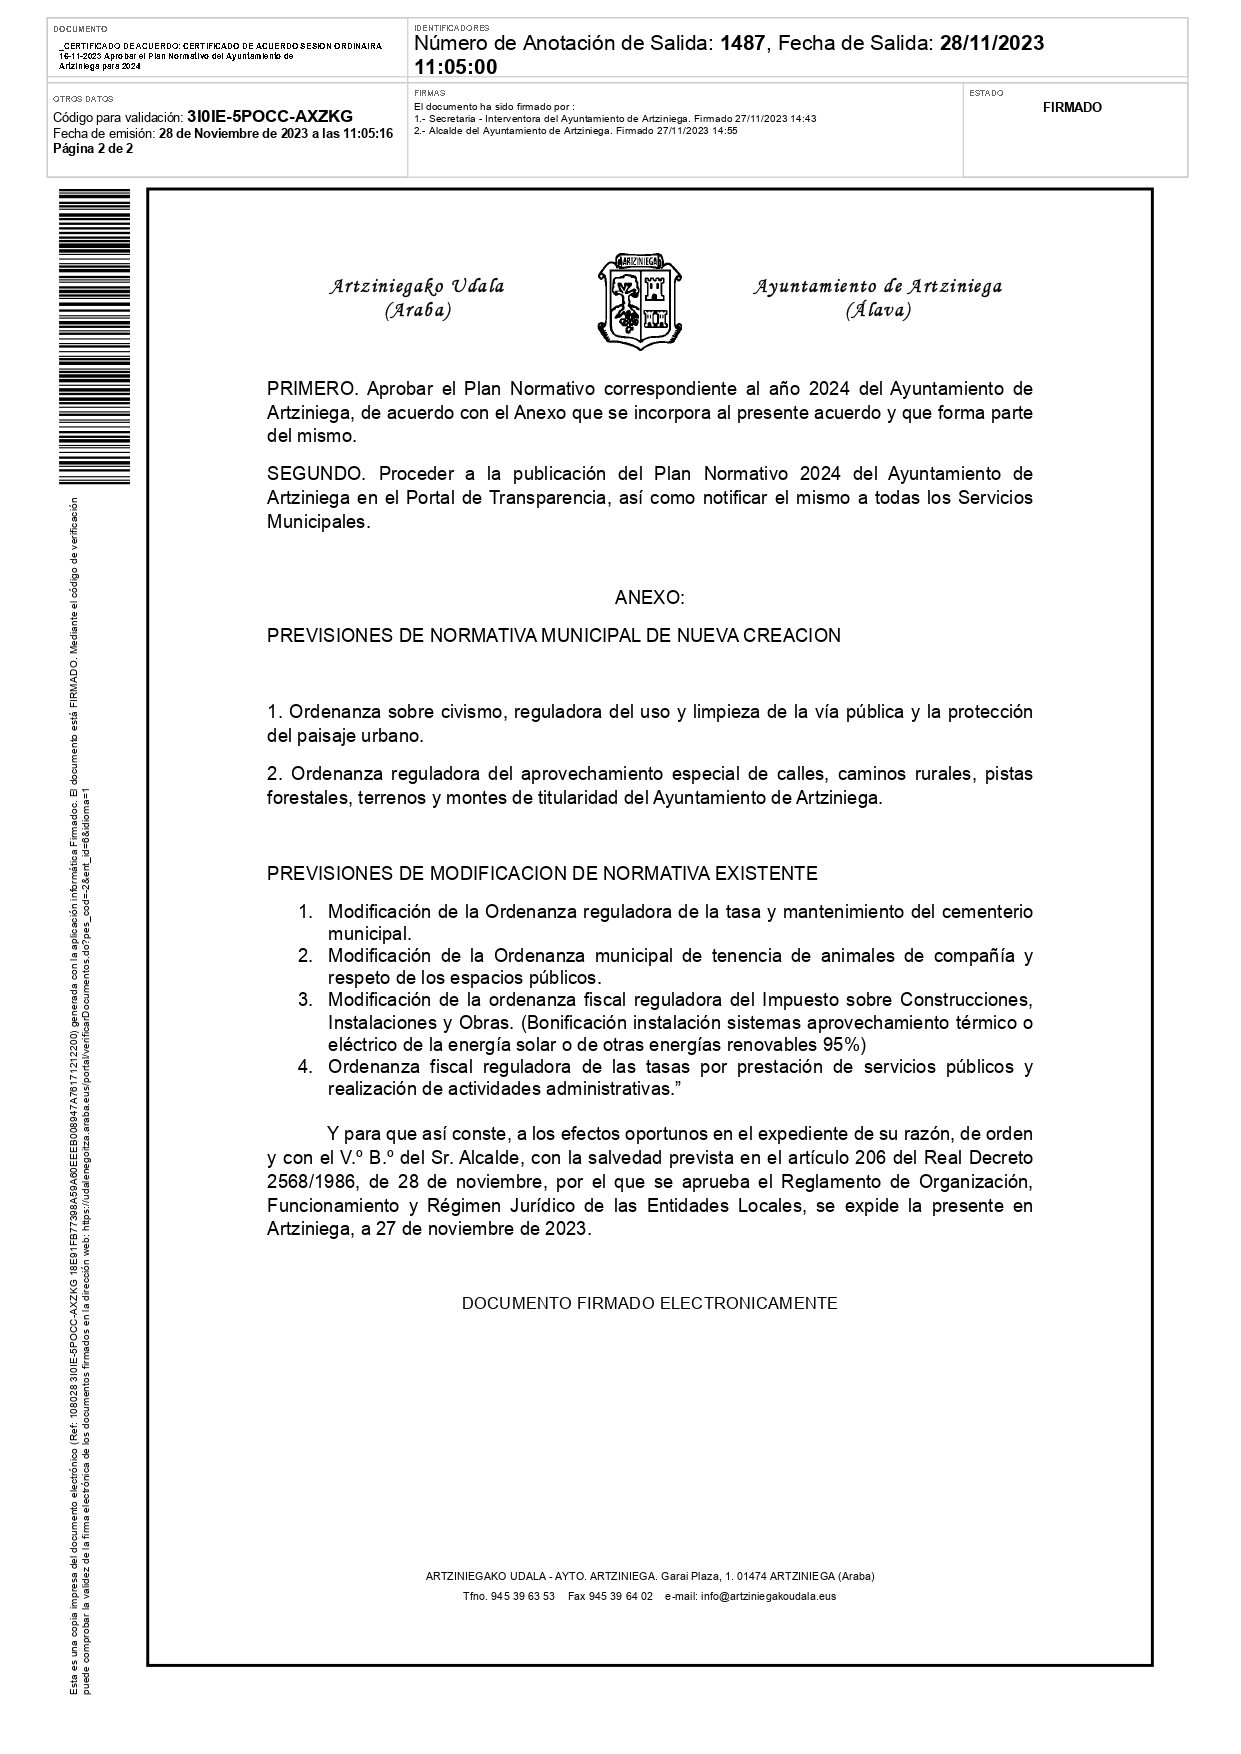 CERTIFICADO DE ACUERDO SESION ORDINAIRA 16 11 2023 Aprobar el Plan Normativo del Ayuntamiento de Artziniega para 2024 page 0002